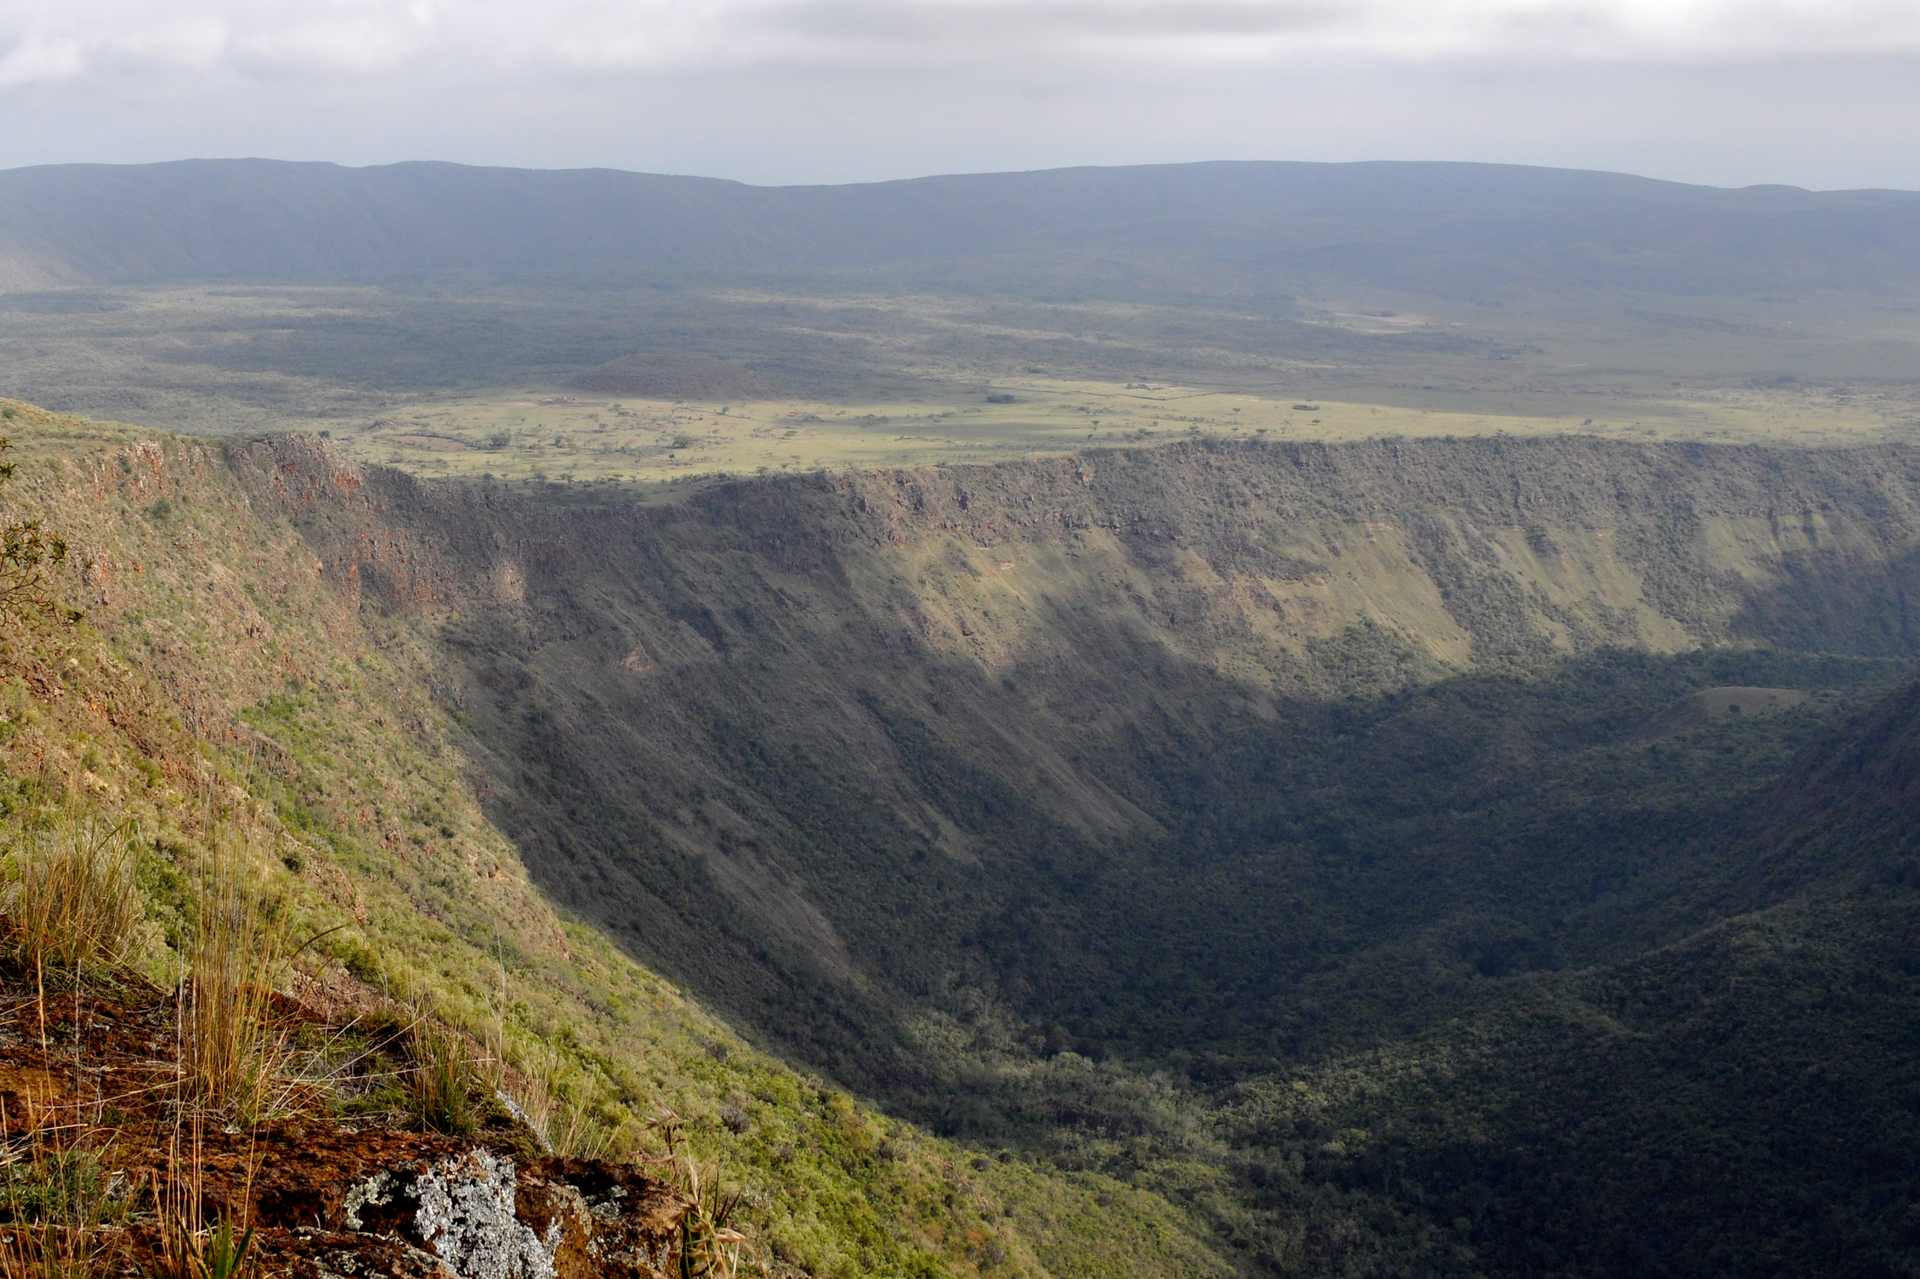 Zdjęcie przedstawia dolinę ryftową we wschodniej Afryce. Na pierwszym planie dolina, dalej uskok. Na dalszym planie rozległa równina, w tle góry. Cały teren porośnięty trawą.